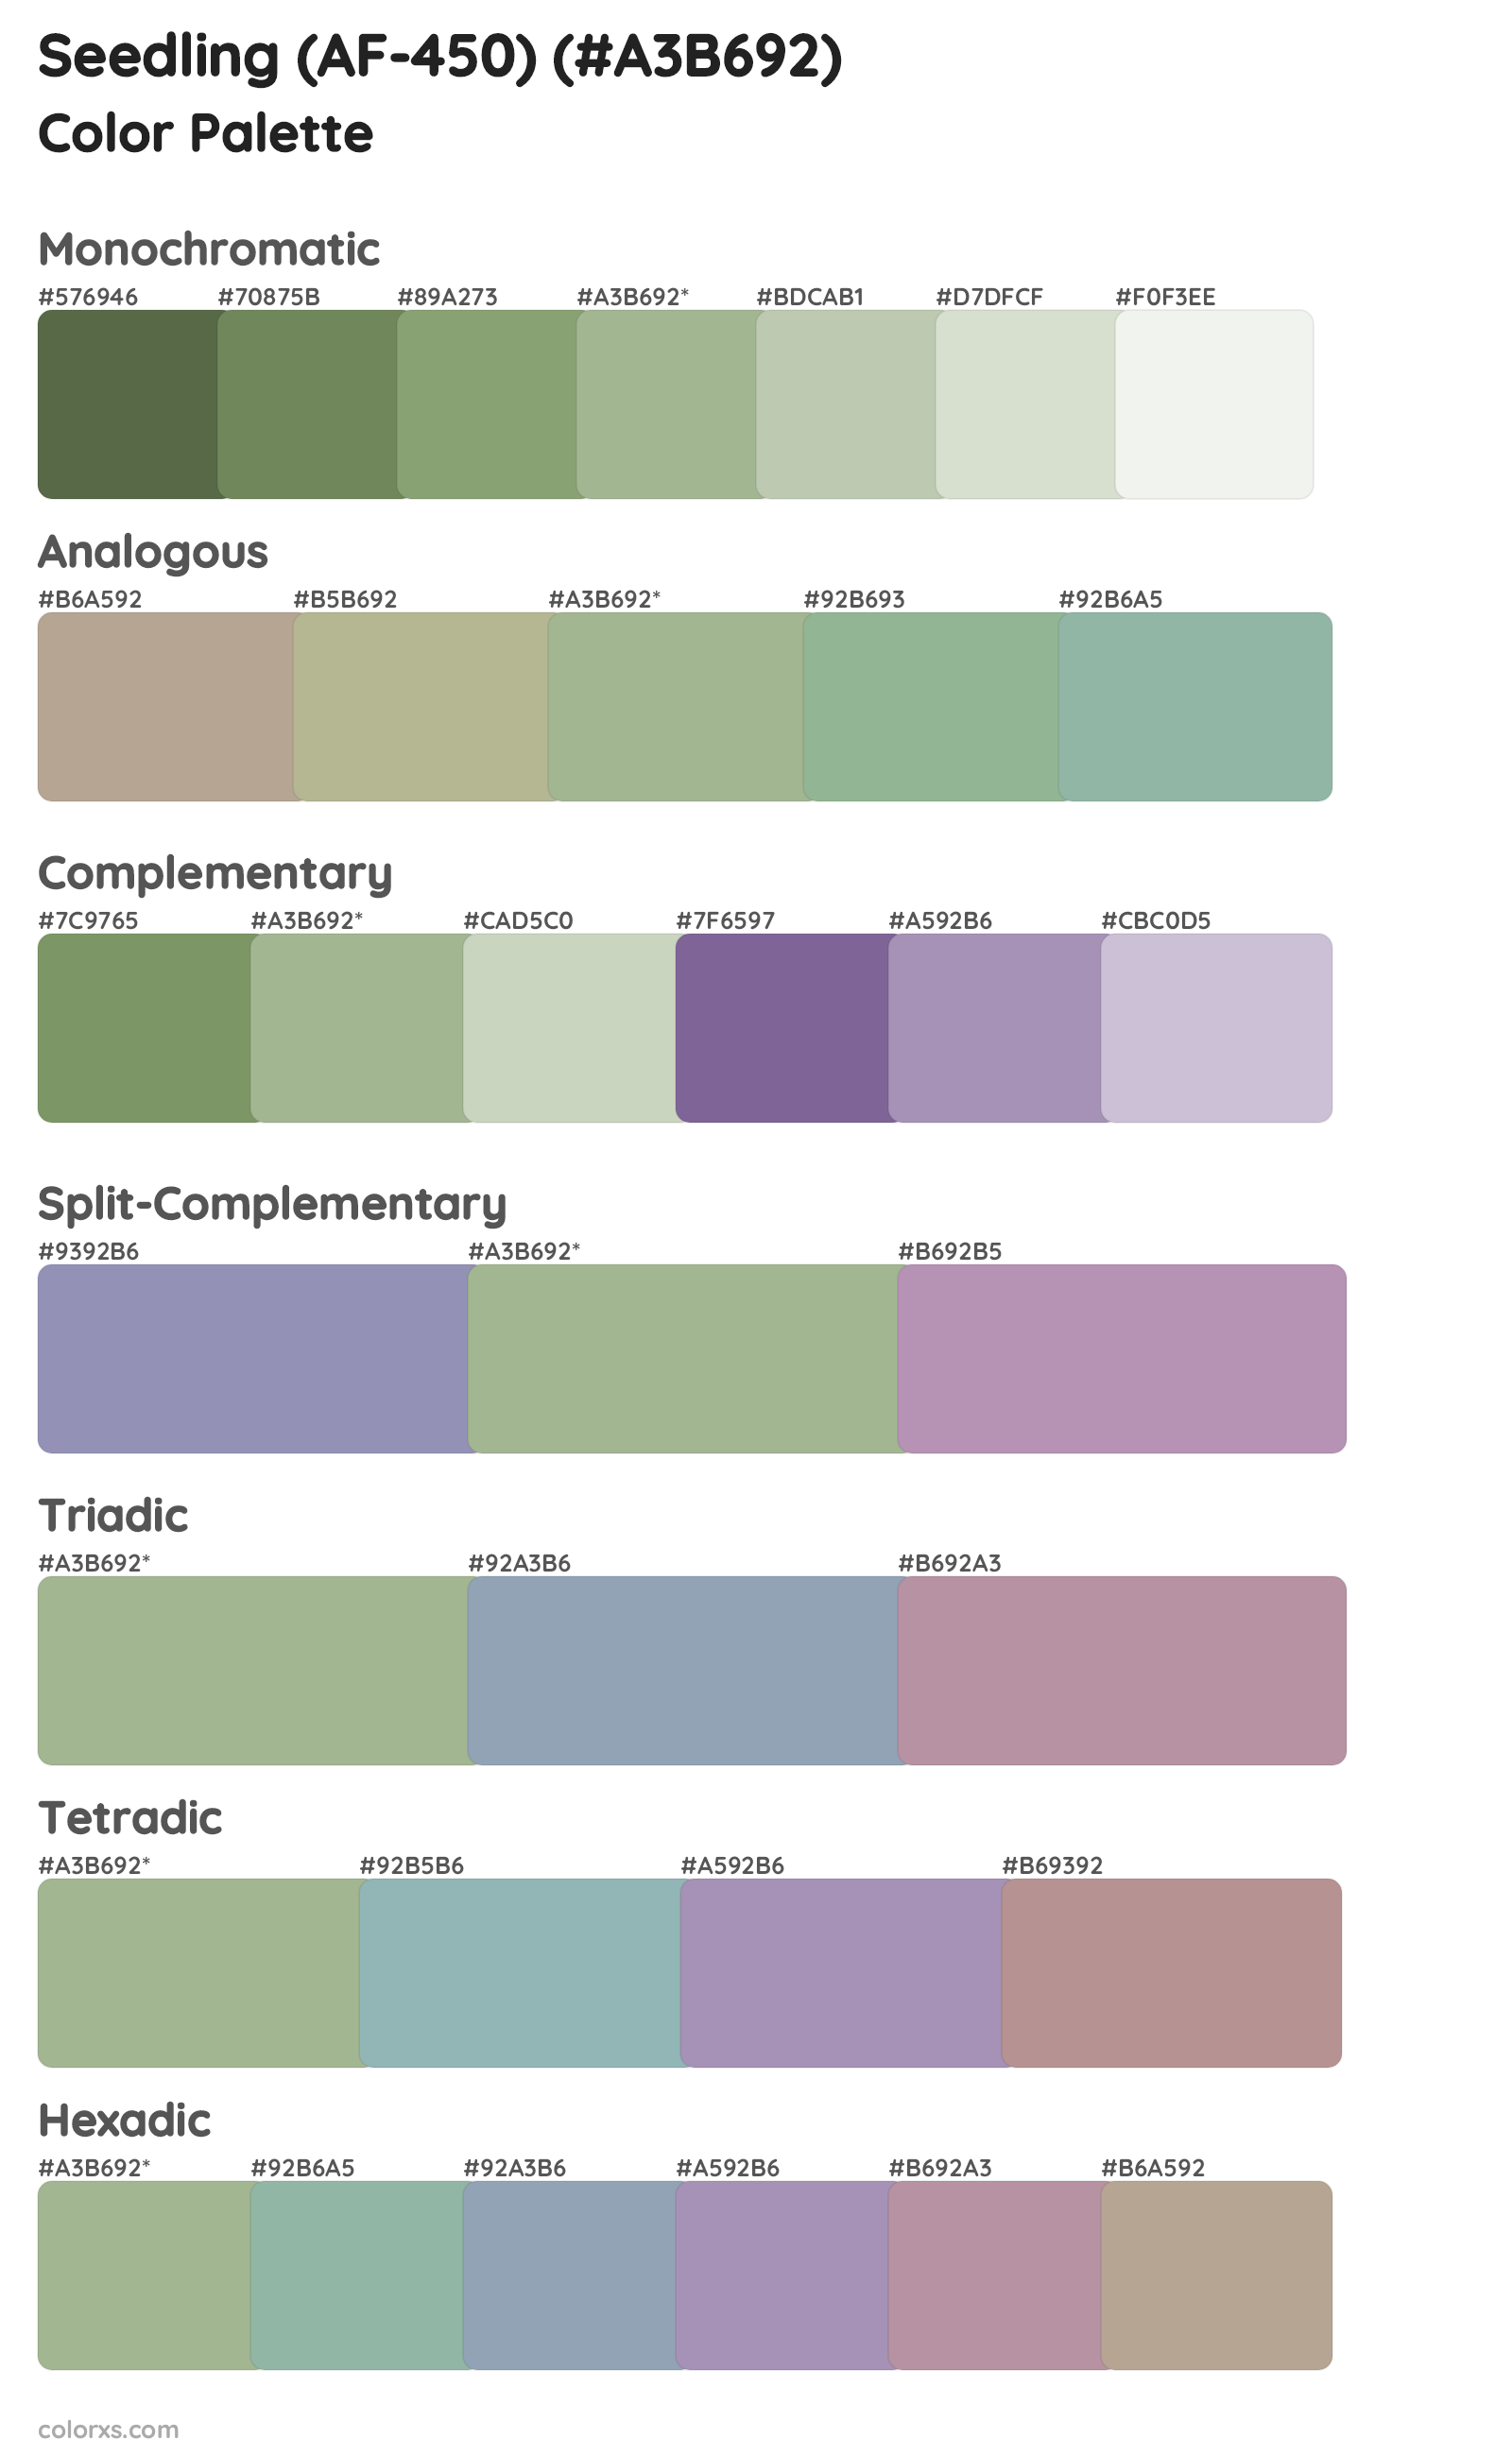 Seedling (AF-450) Color Scheme Palettes